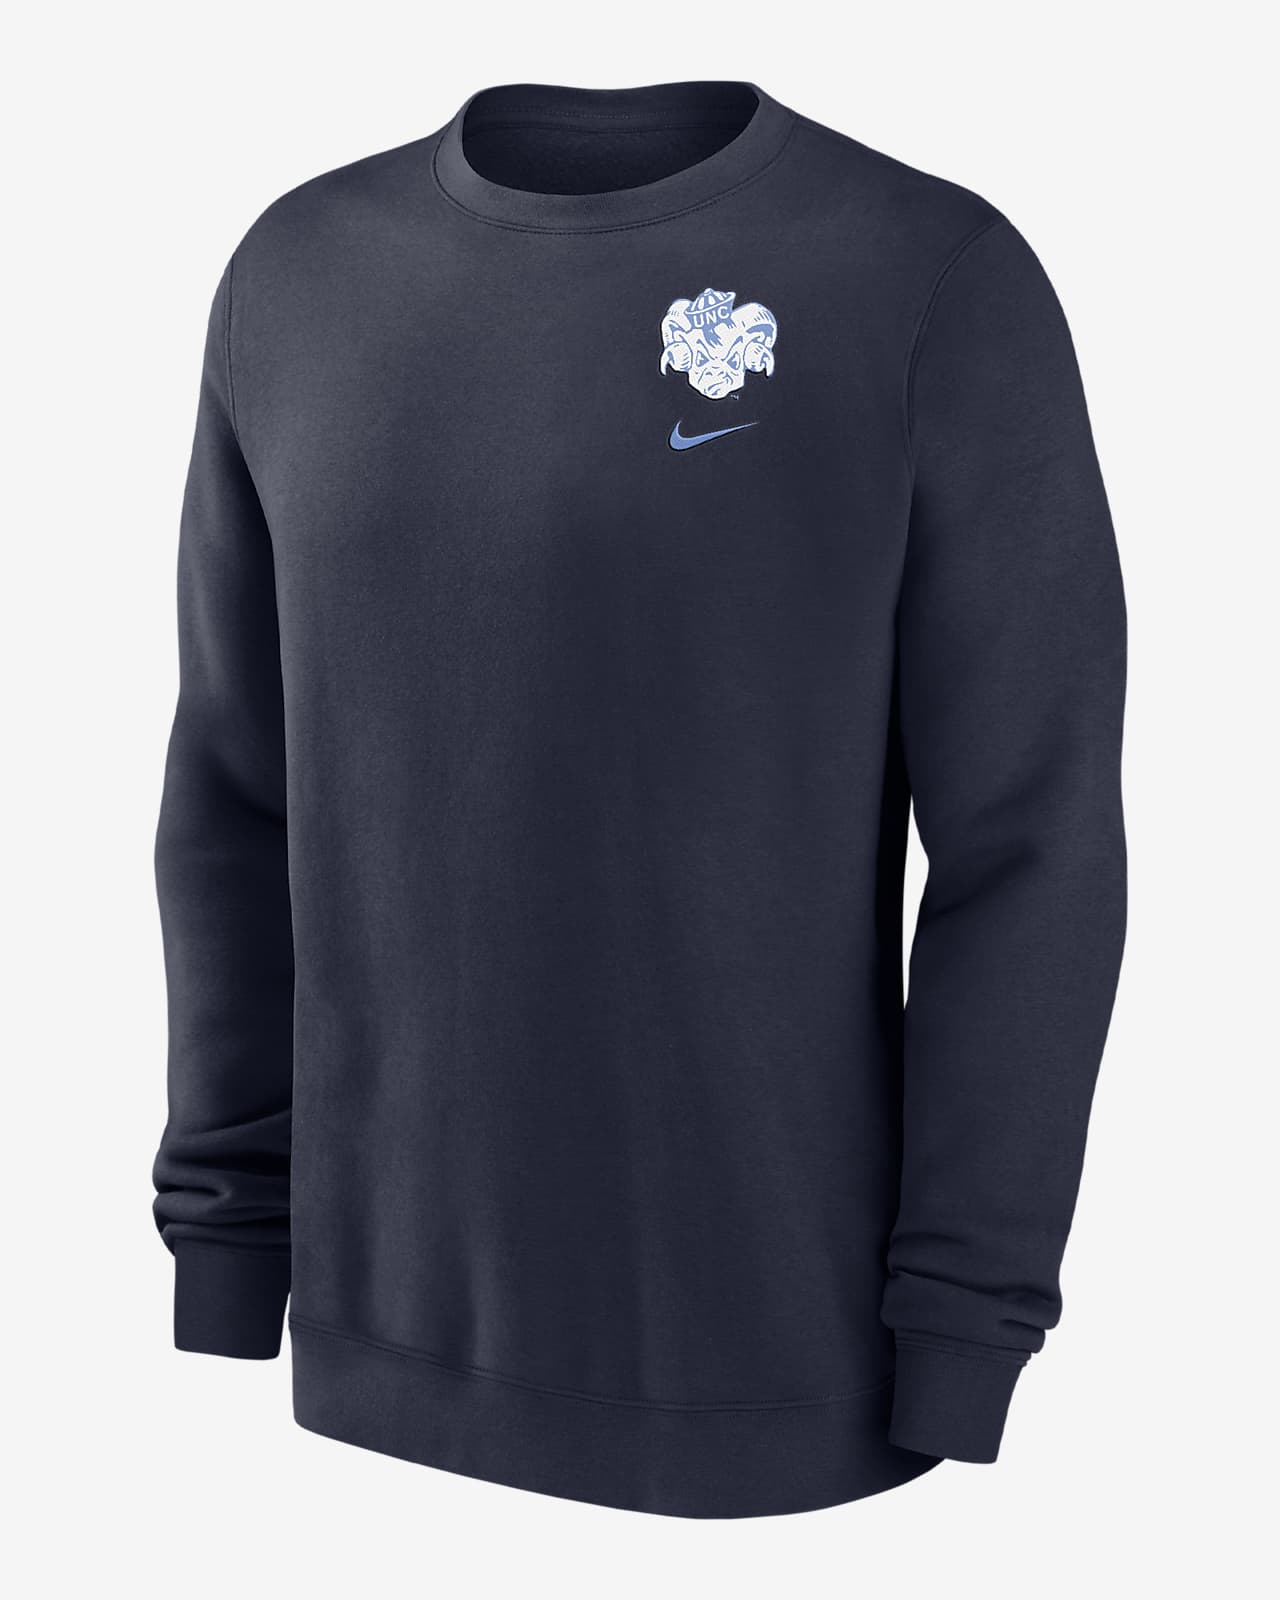 UNC Club Fleece Men's Nike College Sweatshirt